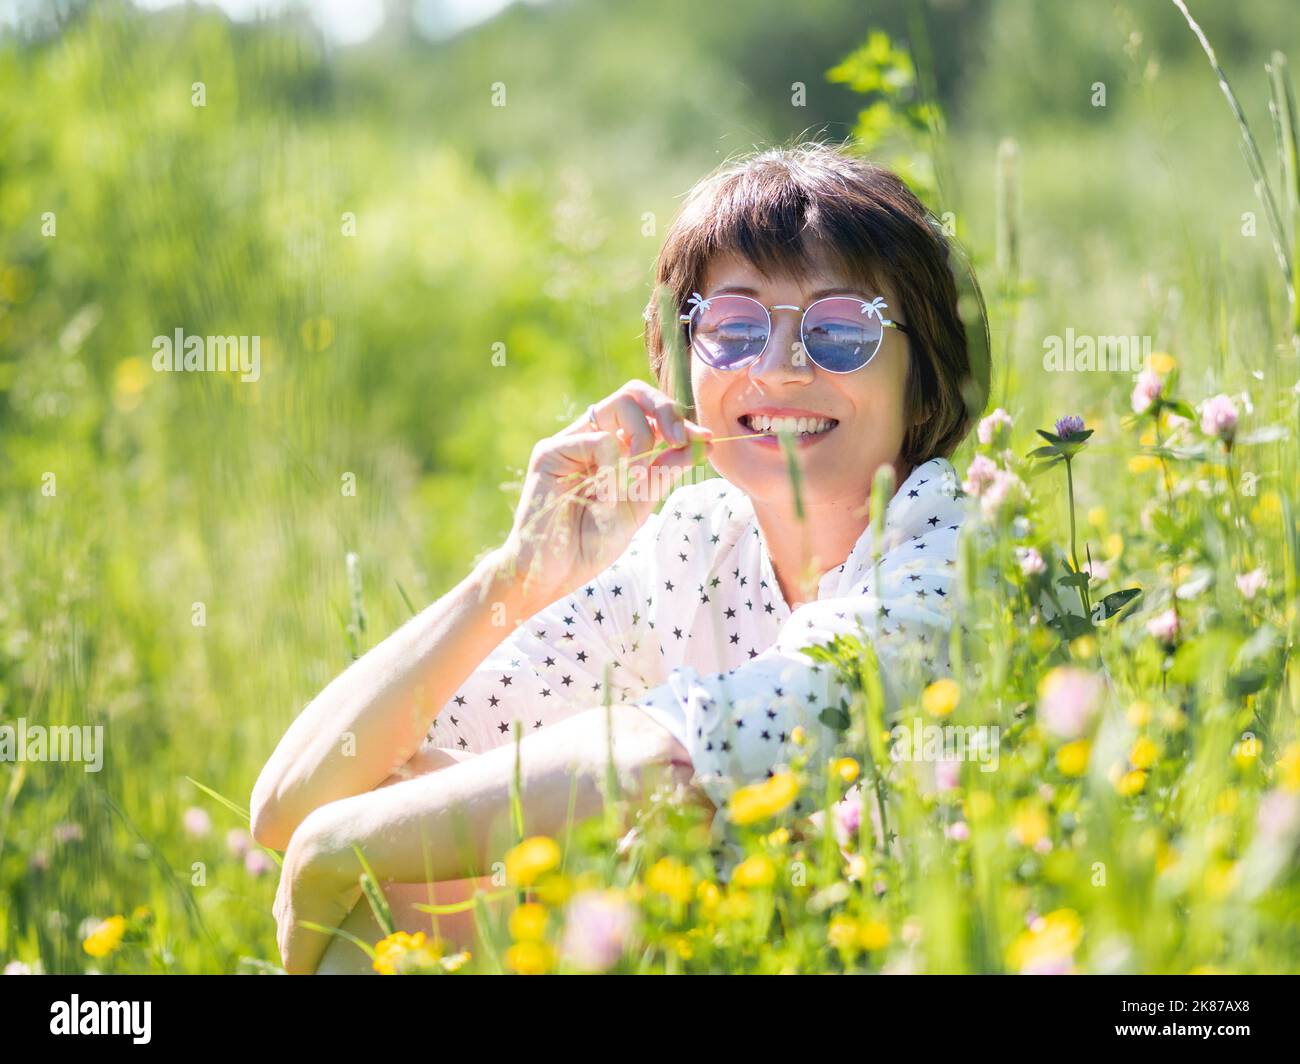 Frau in bunten Sonnenbrillen, genießt Sonnenlicht und Blumenduft auf Grasfeld. Sommerliche Stimmung. Entspannen Sie sich im Freien. Selbstberuhigend. Stockfoto